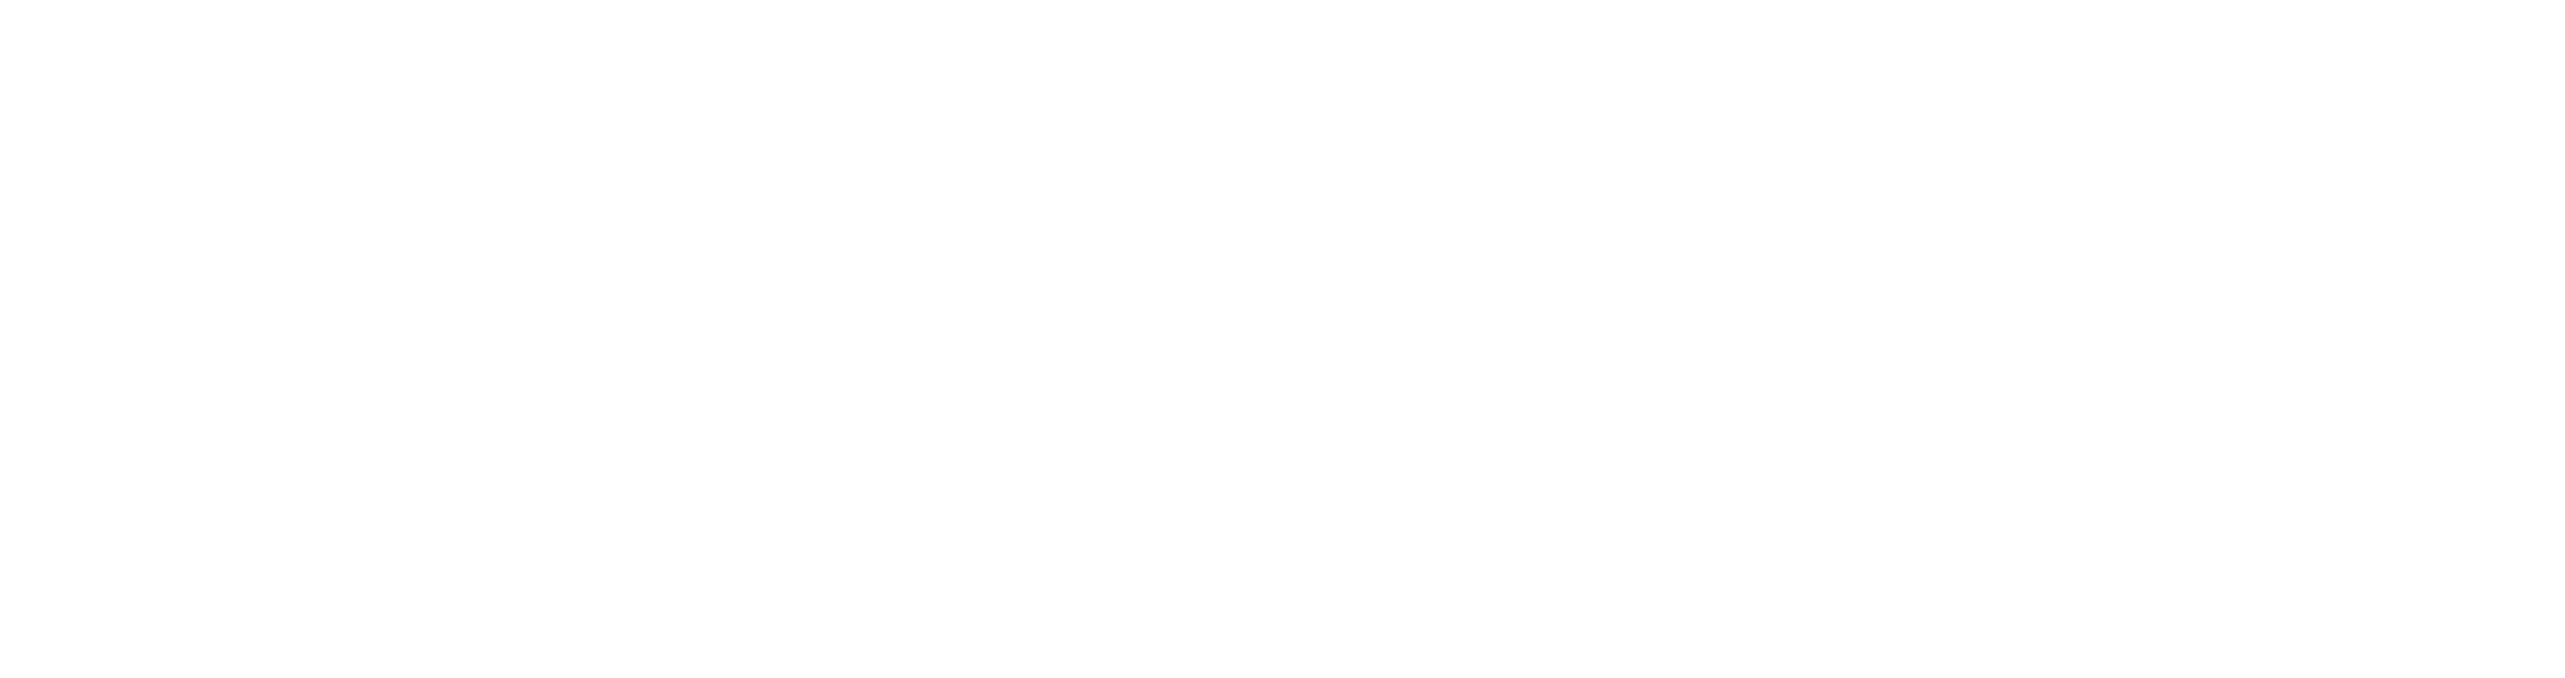 logo_gibb